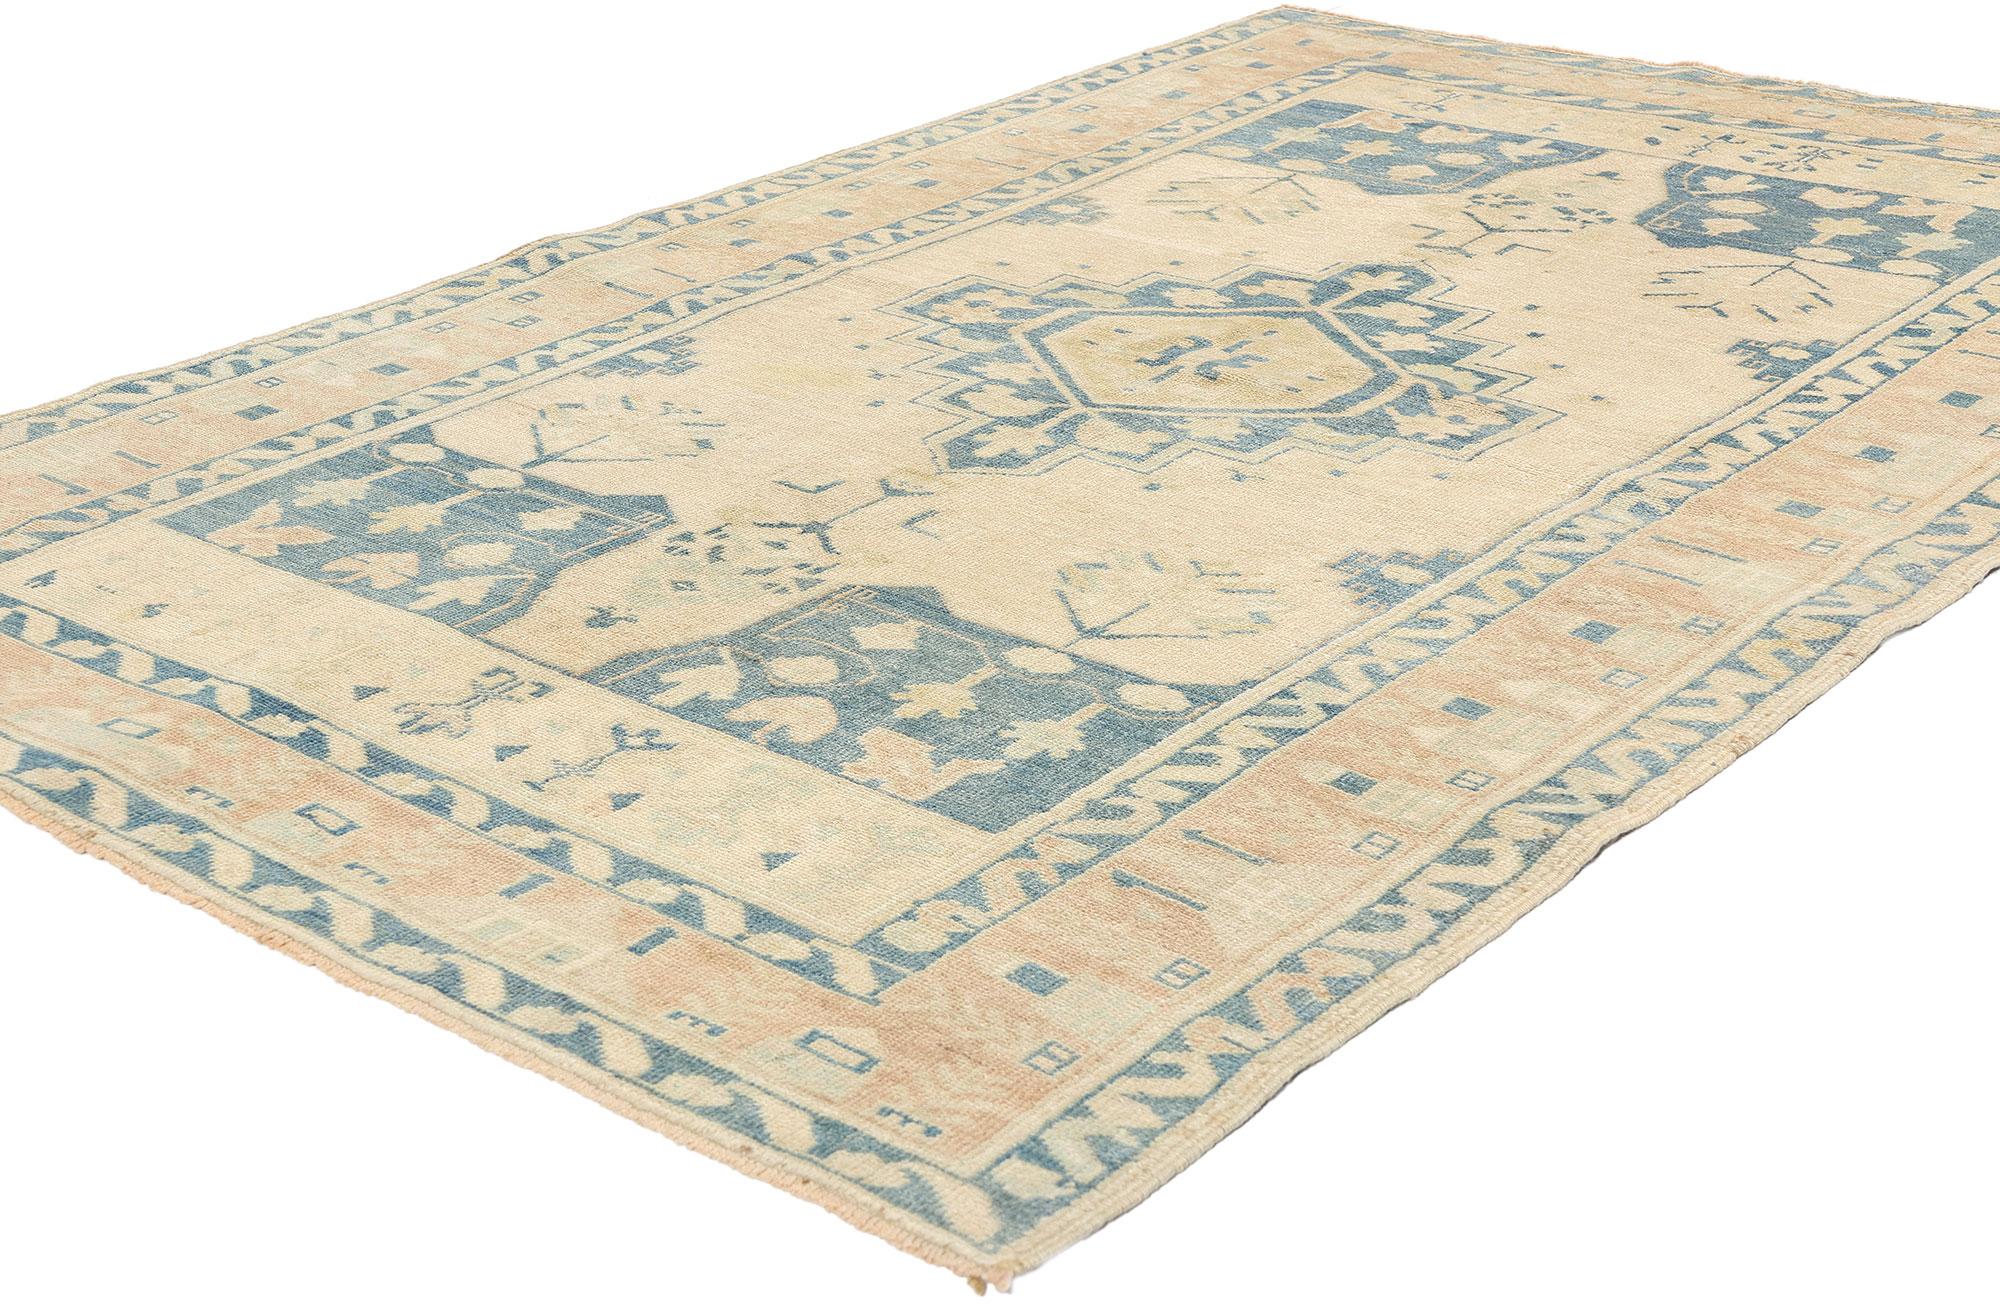 52956 Vintage Muted Turkish Oushak Rug, 04'04 x 06'10. Les tapis turcs Oushak, empreints d'un charme antique et parés de couleurs tamisées, subissent un processus de lavage méticuleux qui préserve leur texture et l'intégrité de leurs poils. Ce